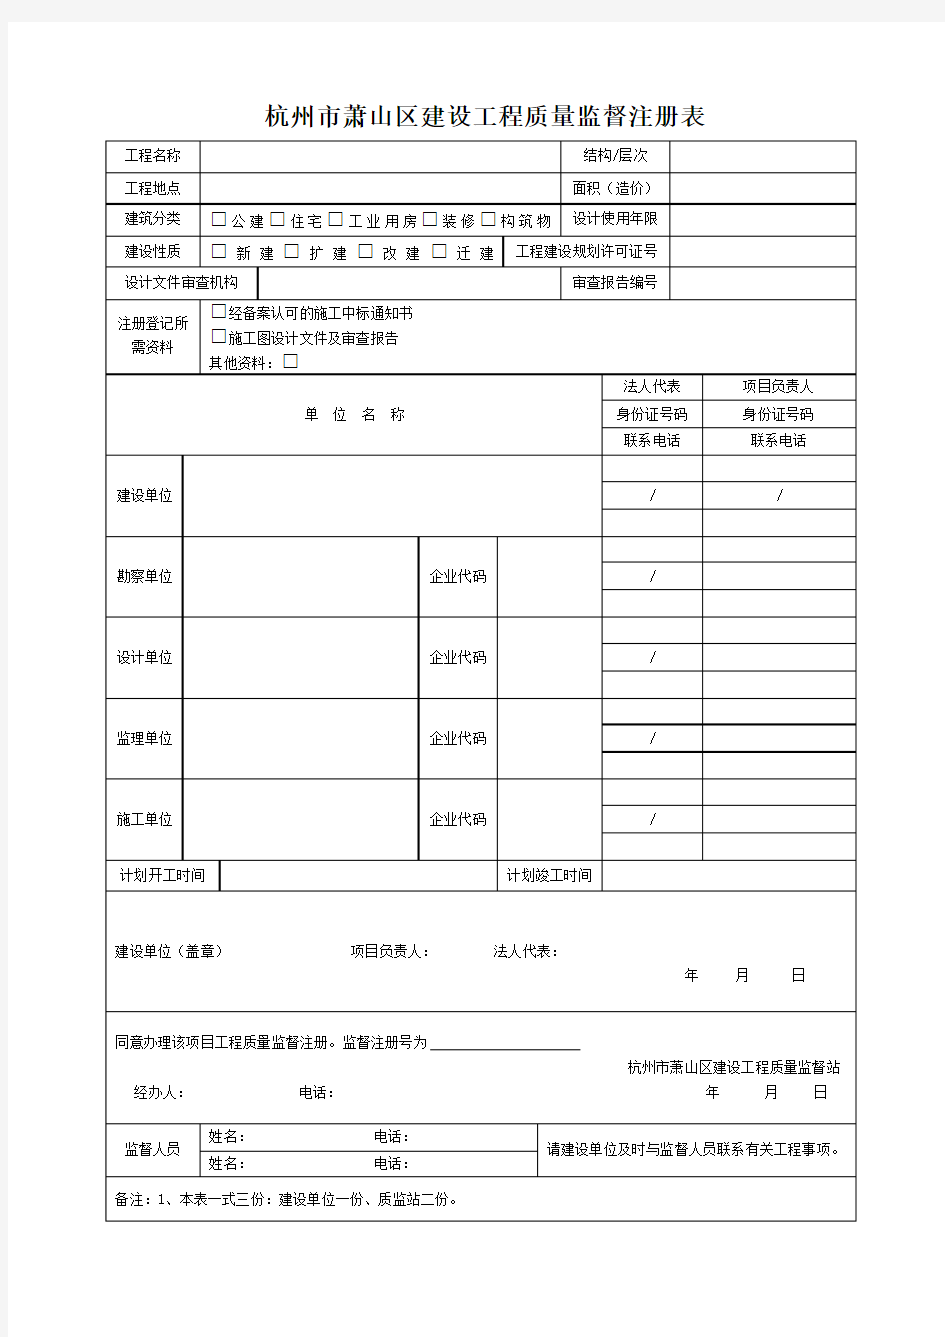 杭州市萧山区建设工程质量监督注册表